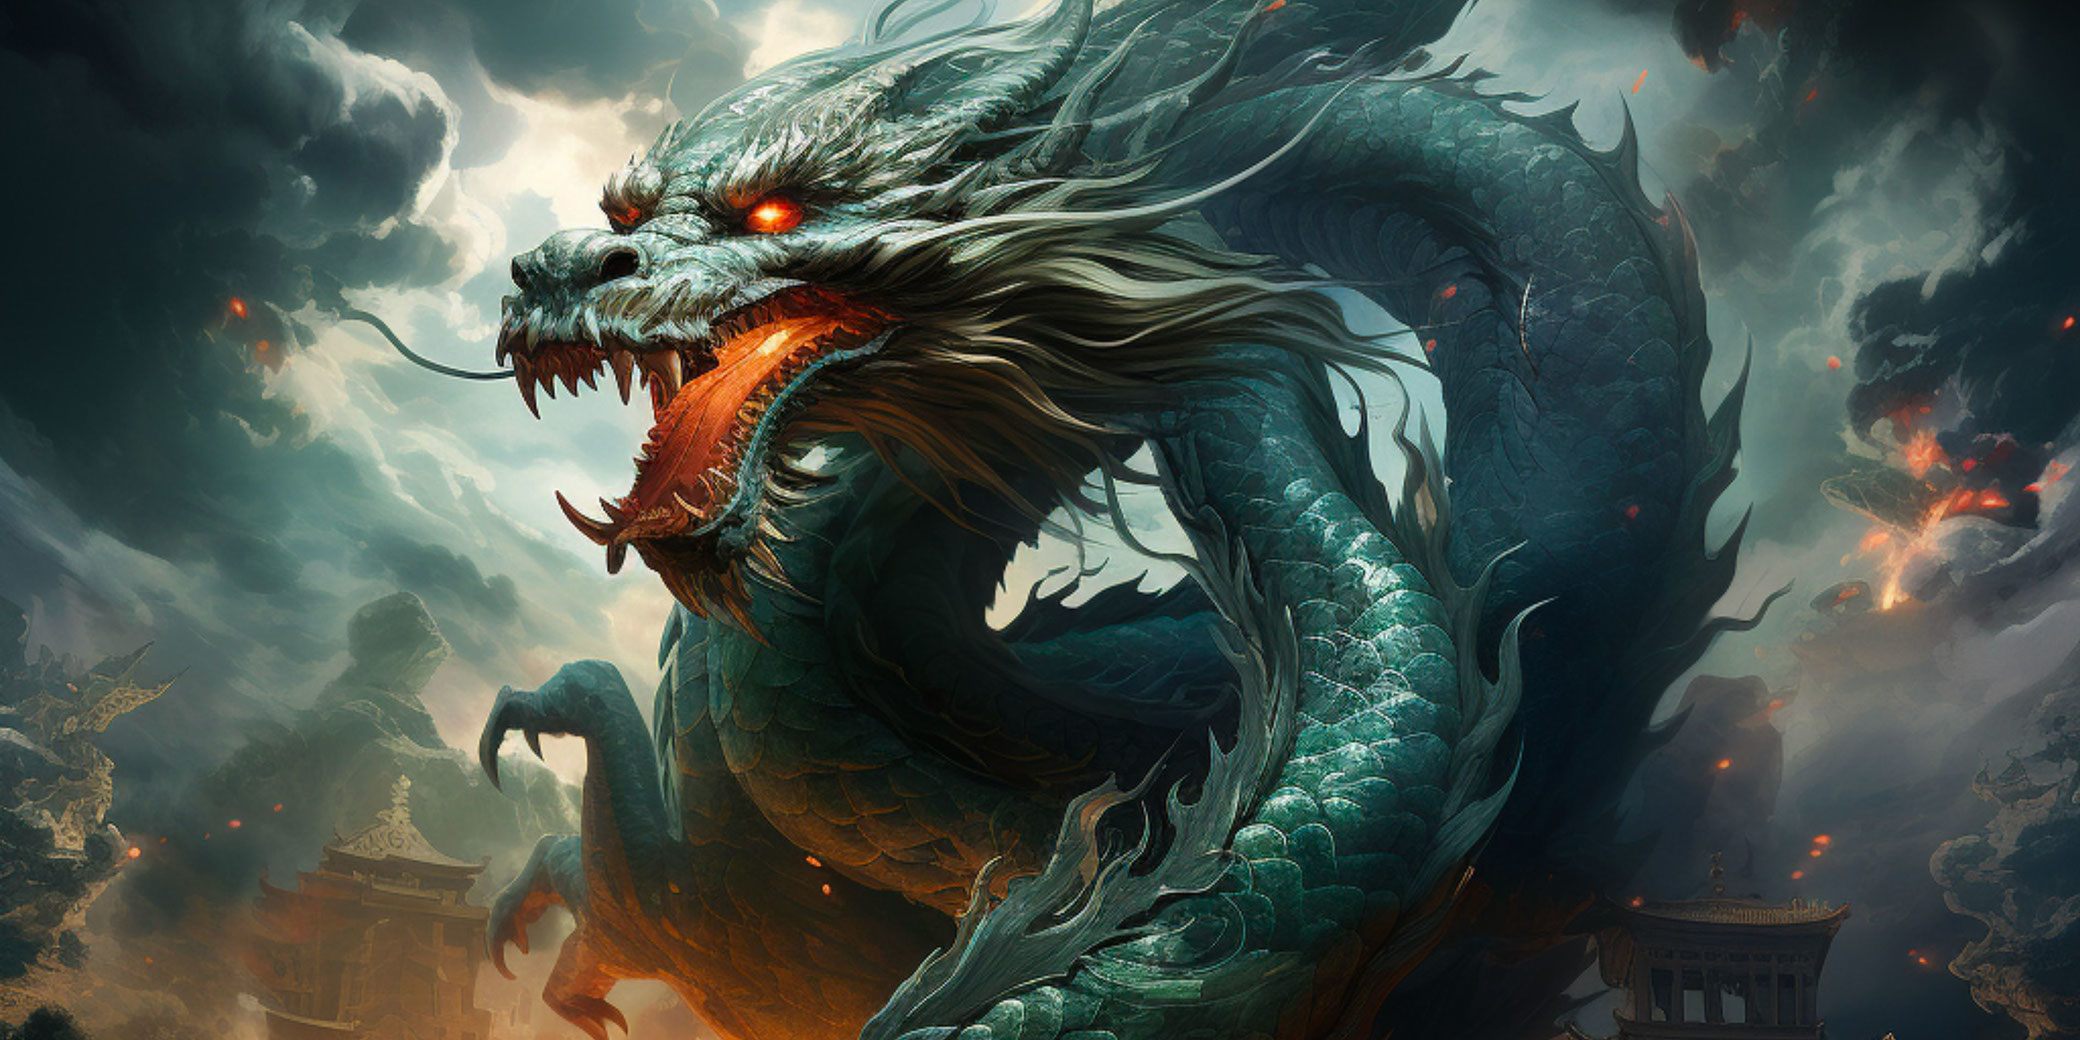 Rồng là sinh vật thần thoại theo quan niệm tín ngưỡng Trung Quốc.